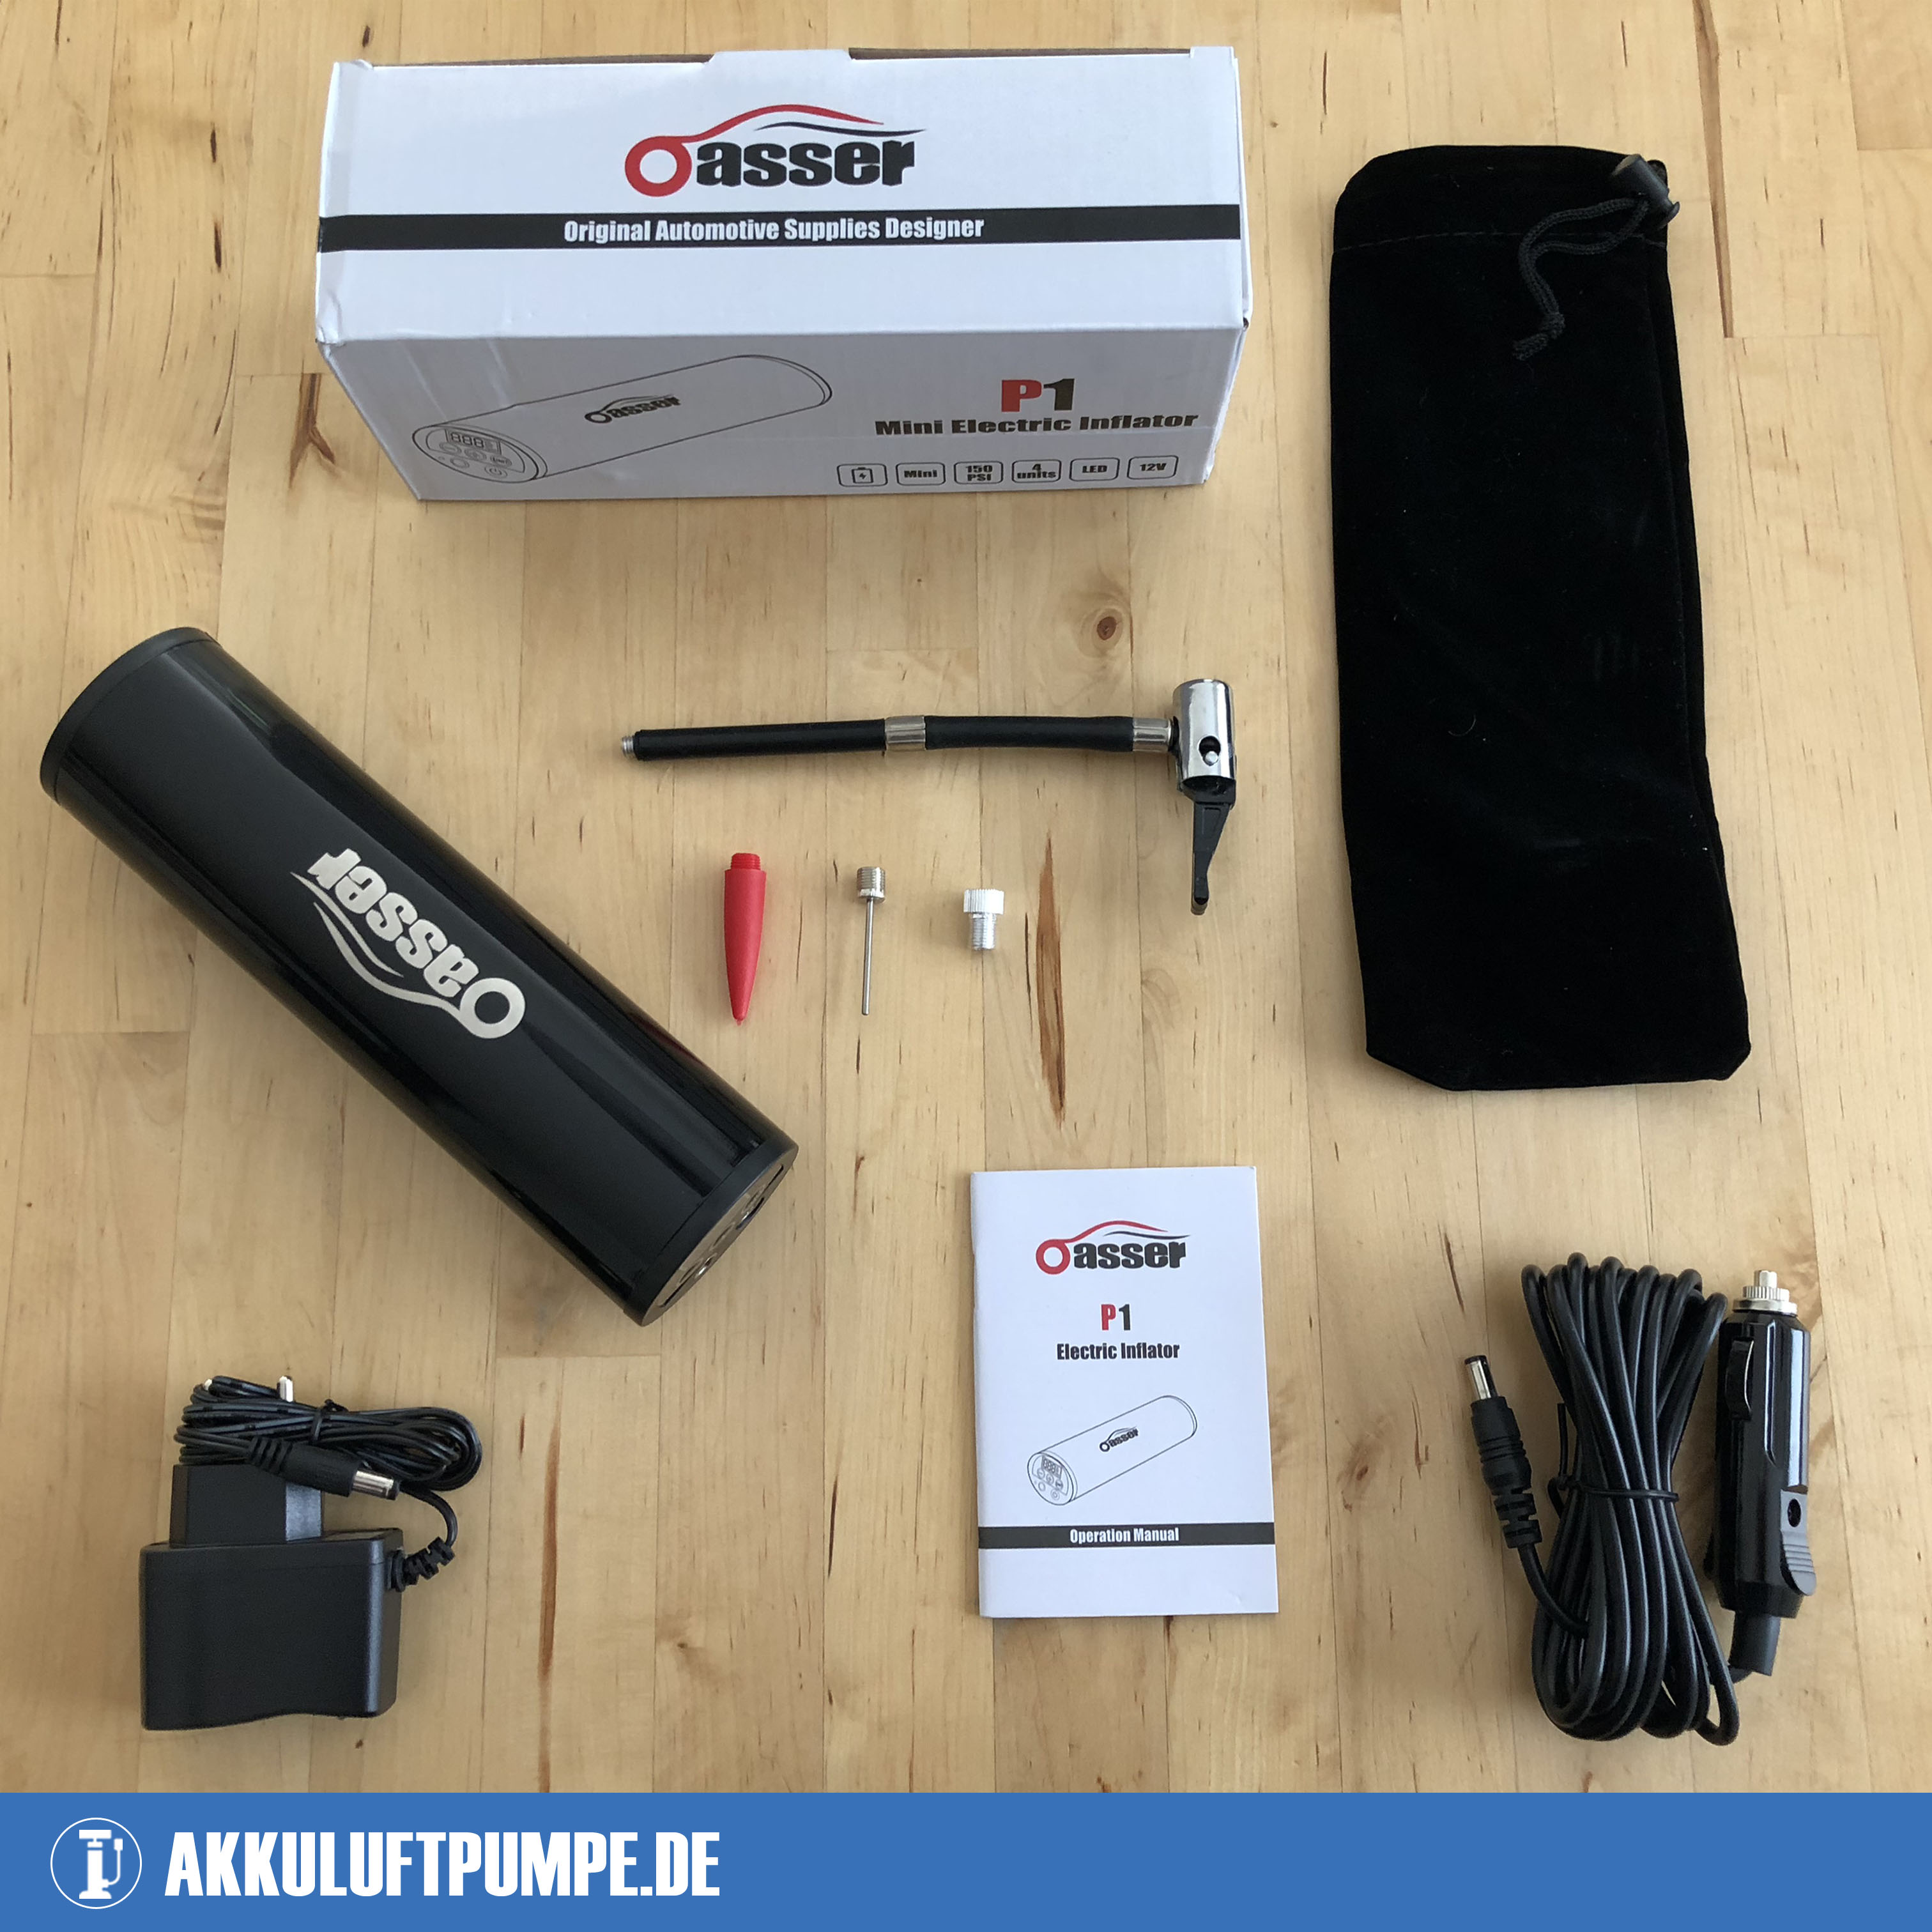 Oasser P1 Akku Kompressor: Test und Erfahrungsbericht